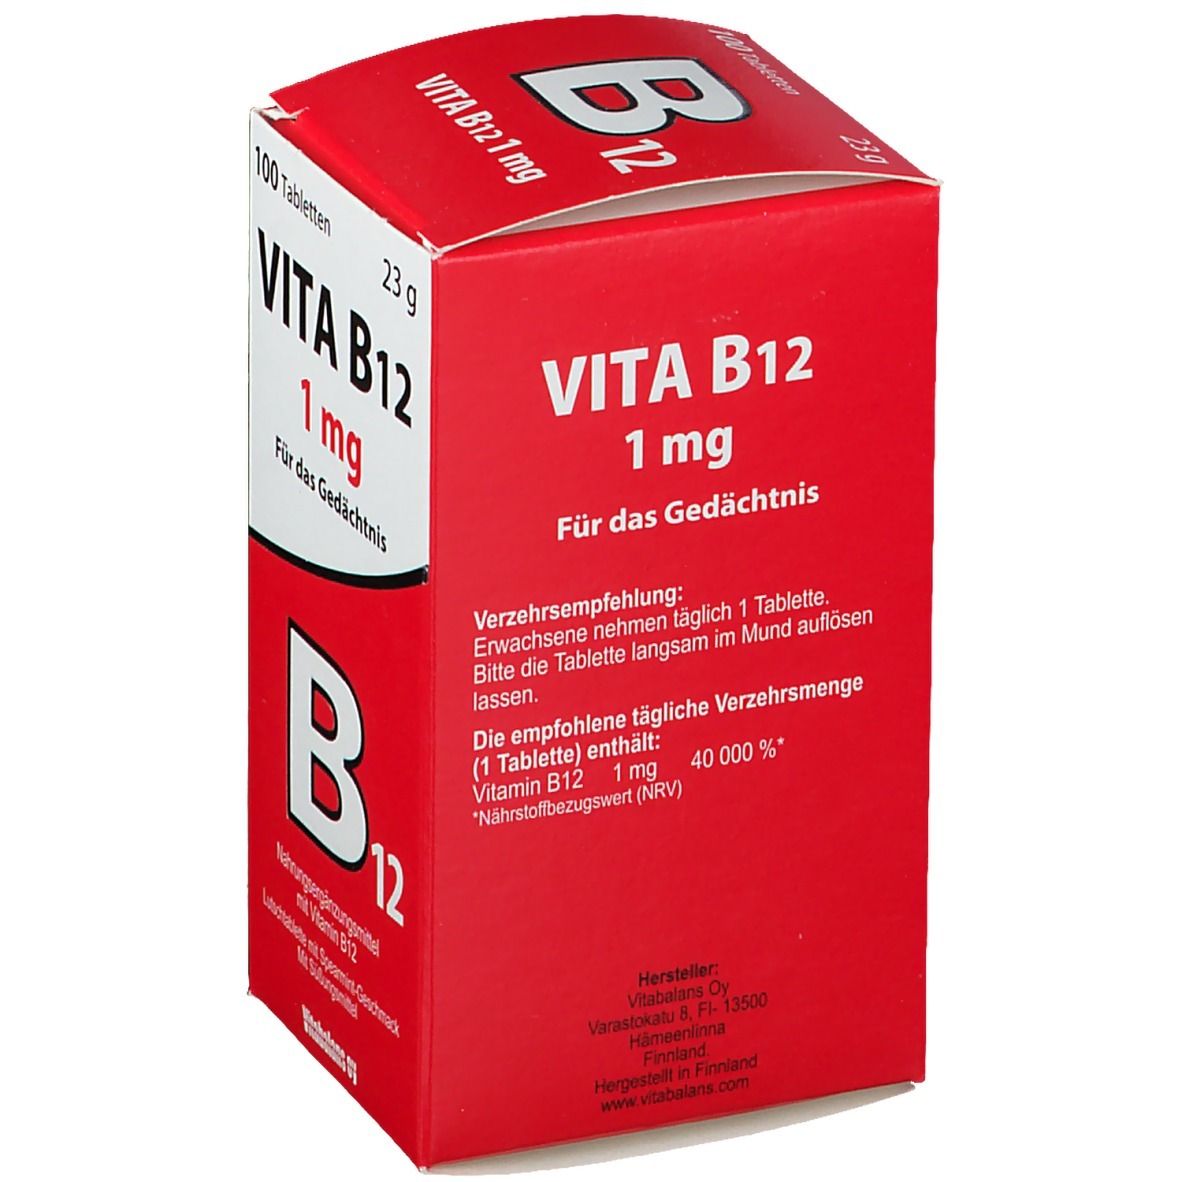 Vita B12 mit Spaermint-Geschmack